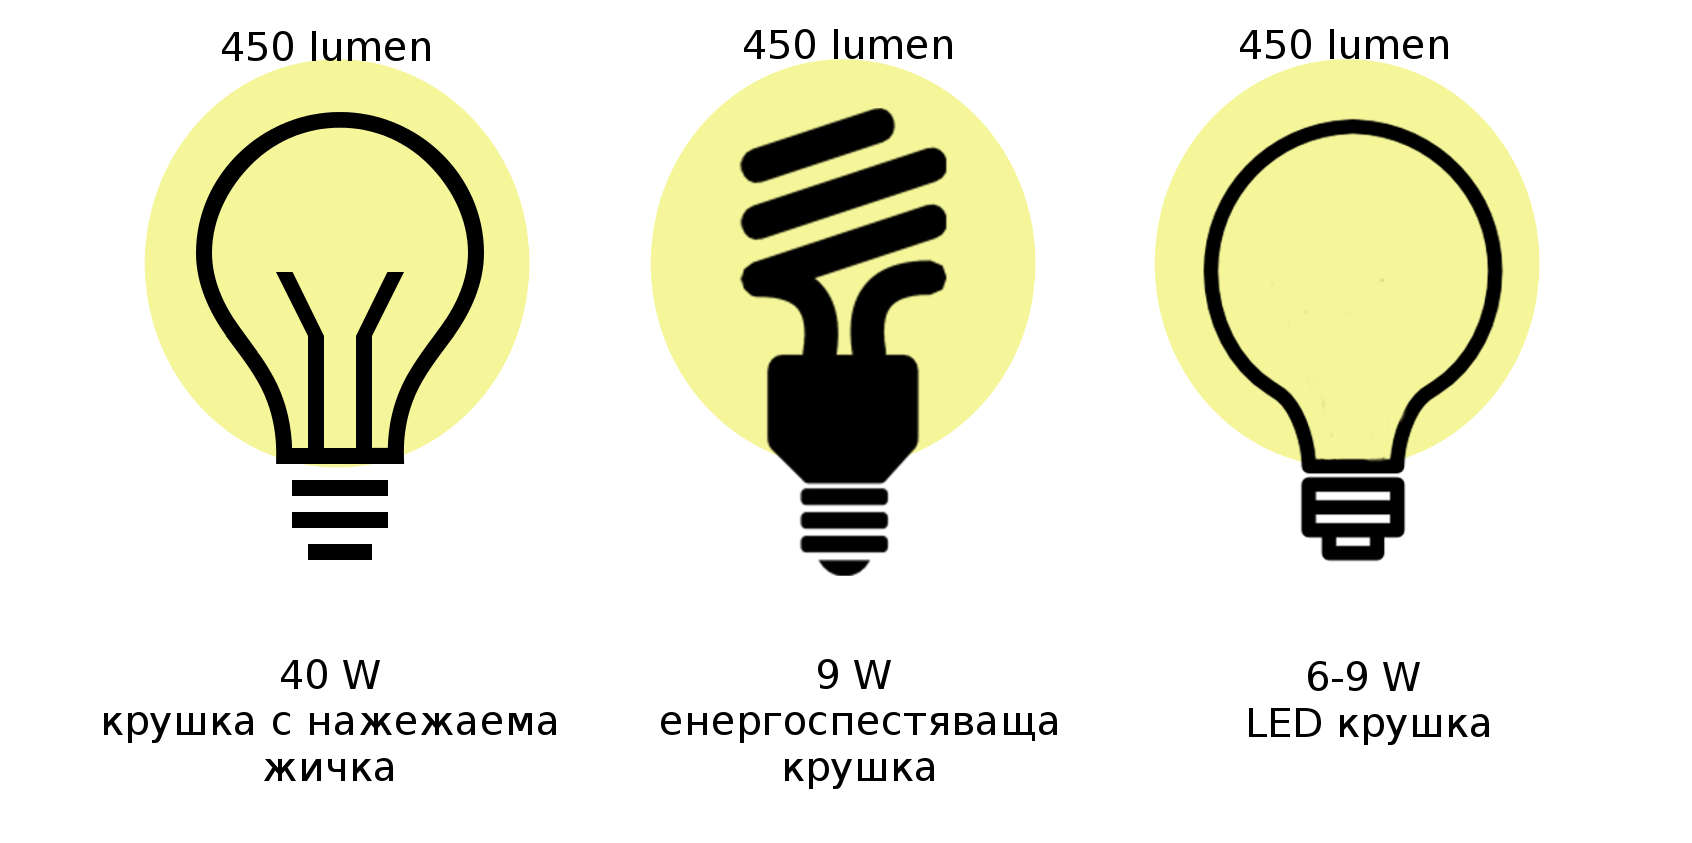 Излъчвана светлина в лумени при еднаква консумирана мощност от различни видове крушки